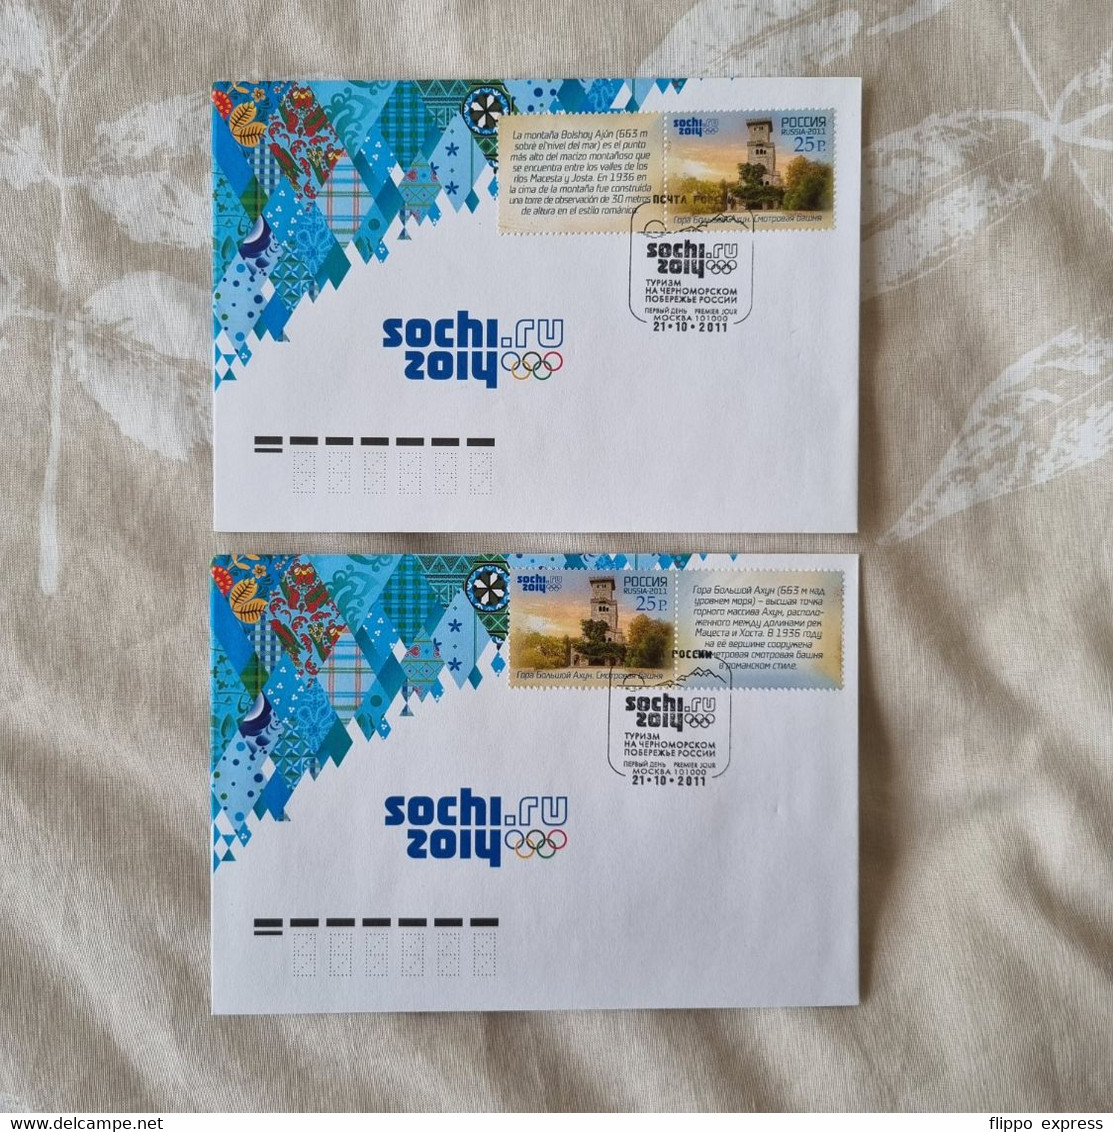 Russia, 2011 Olympics, 20 unused & 3 used FDC's & 5 unused postcards.